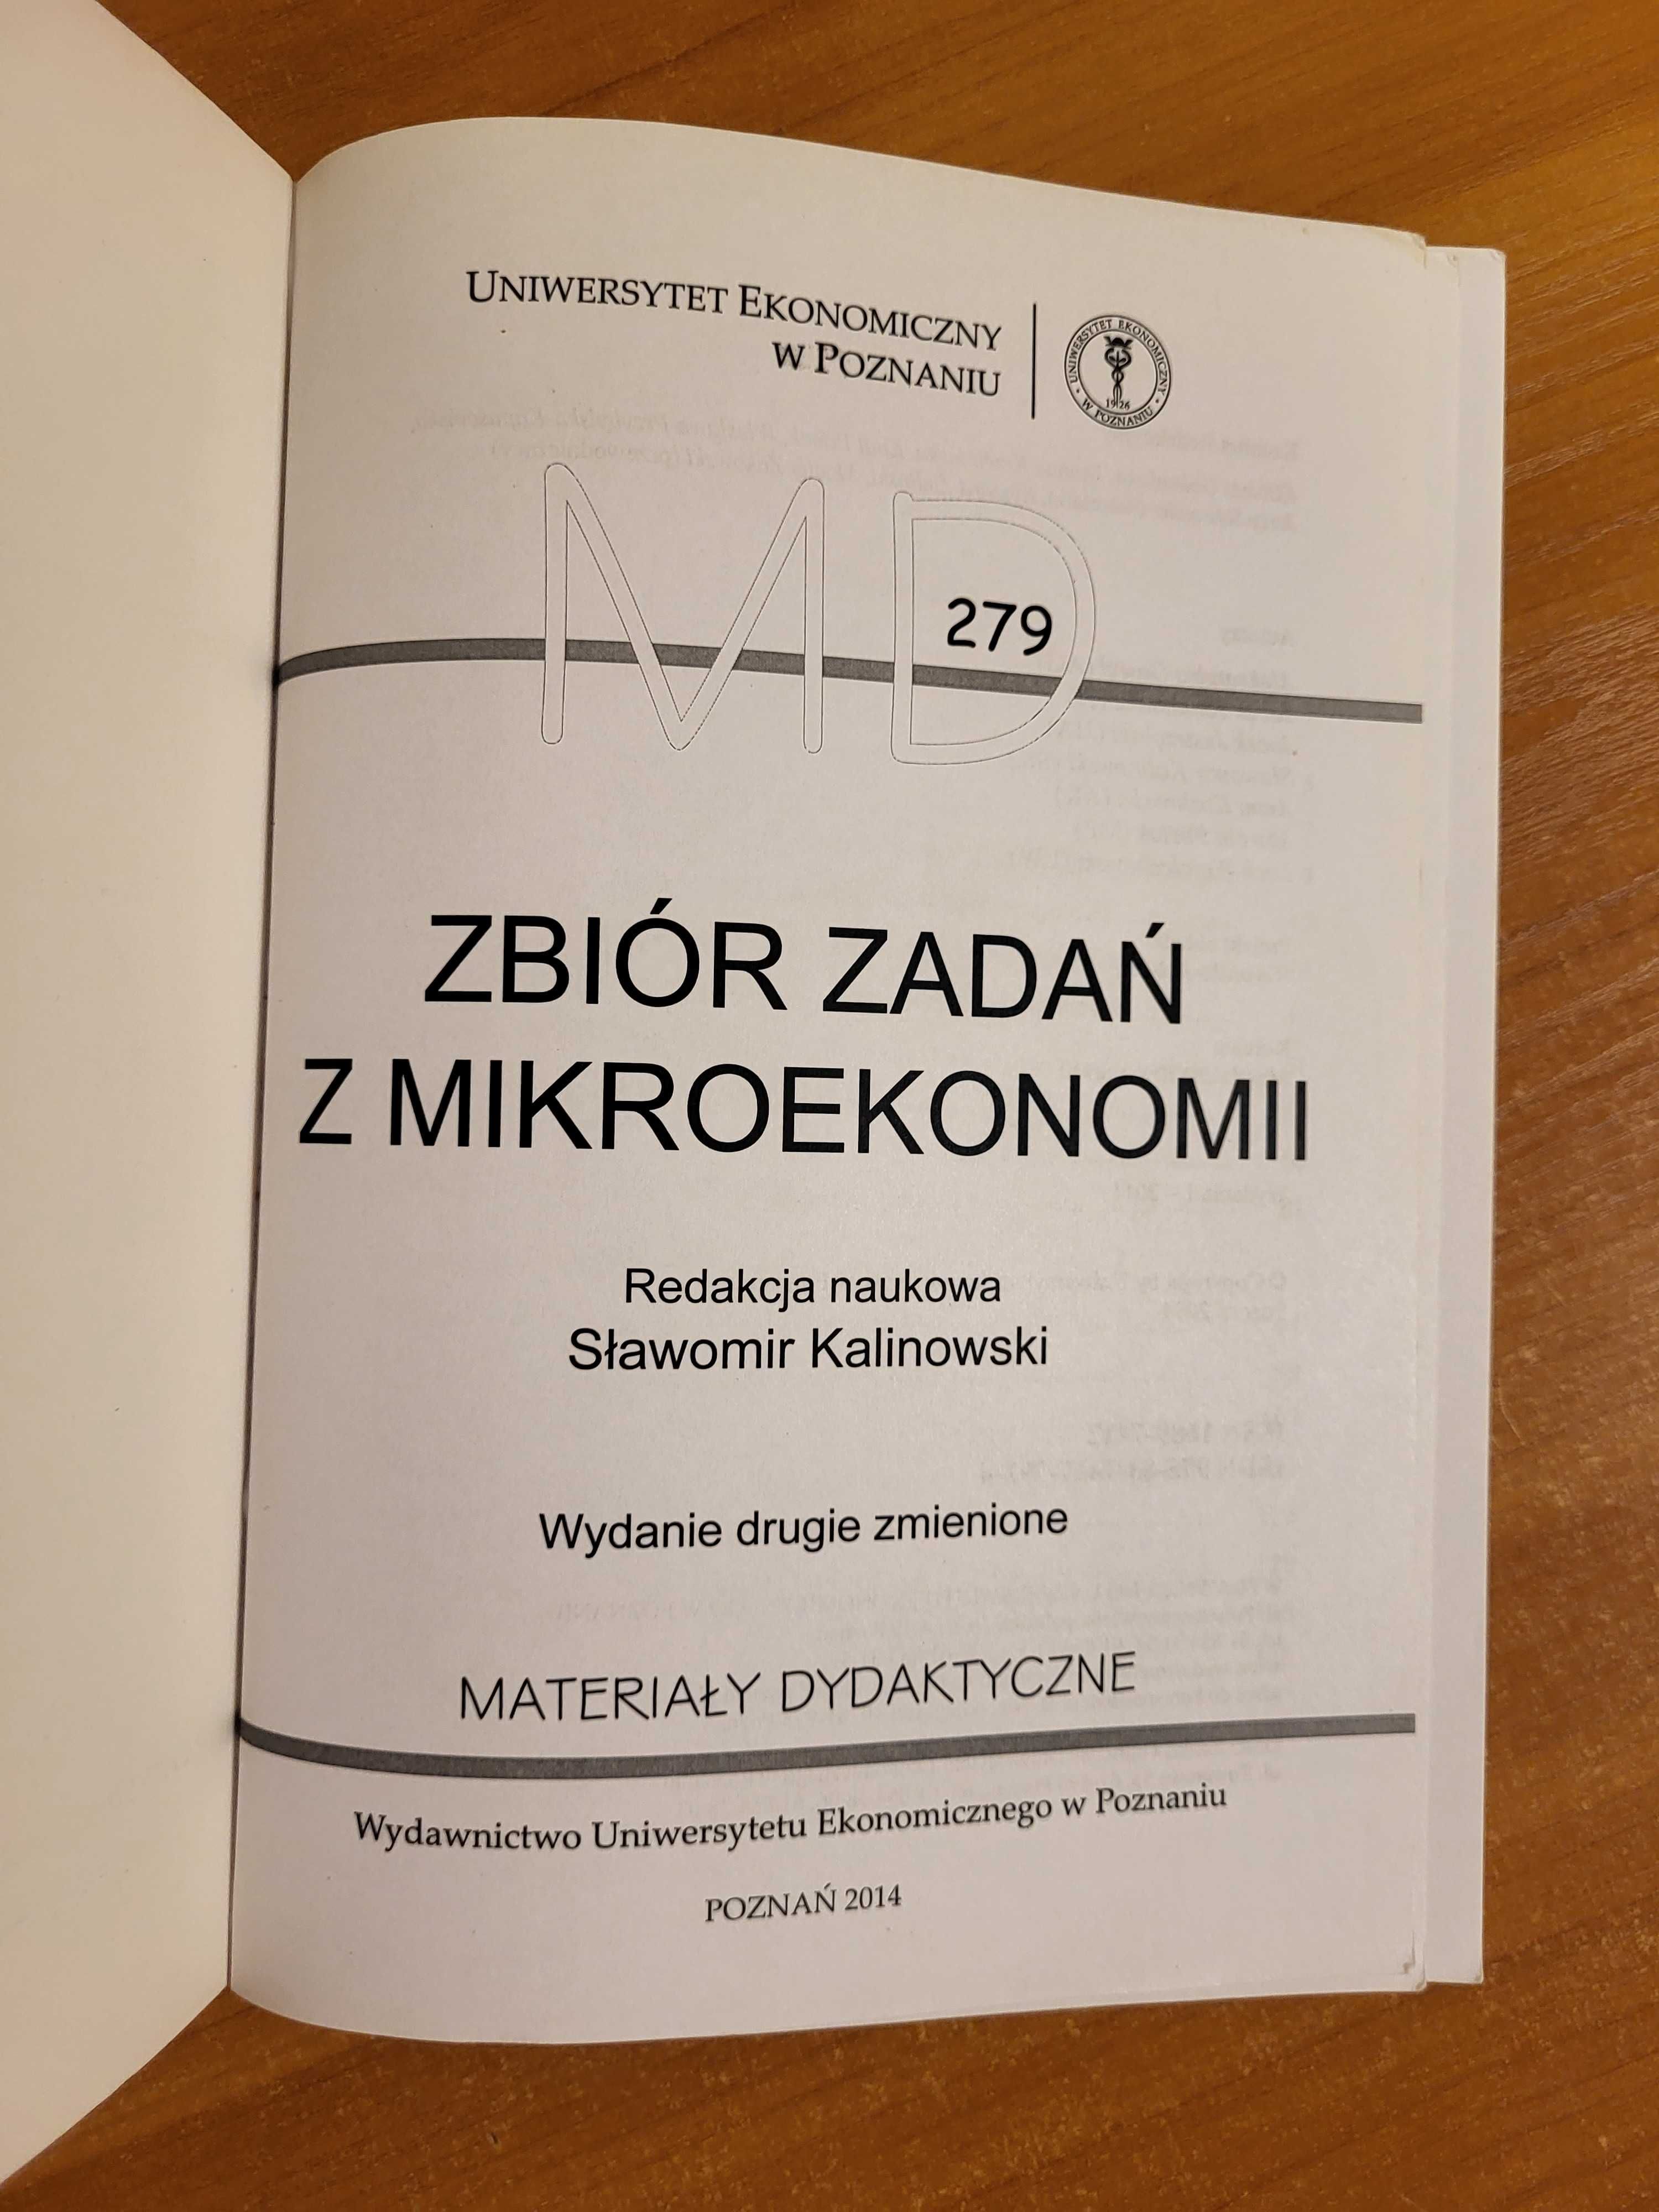 Zbiór zadań z mikroekonomii (279), Sławomir Kalinowski, 2014